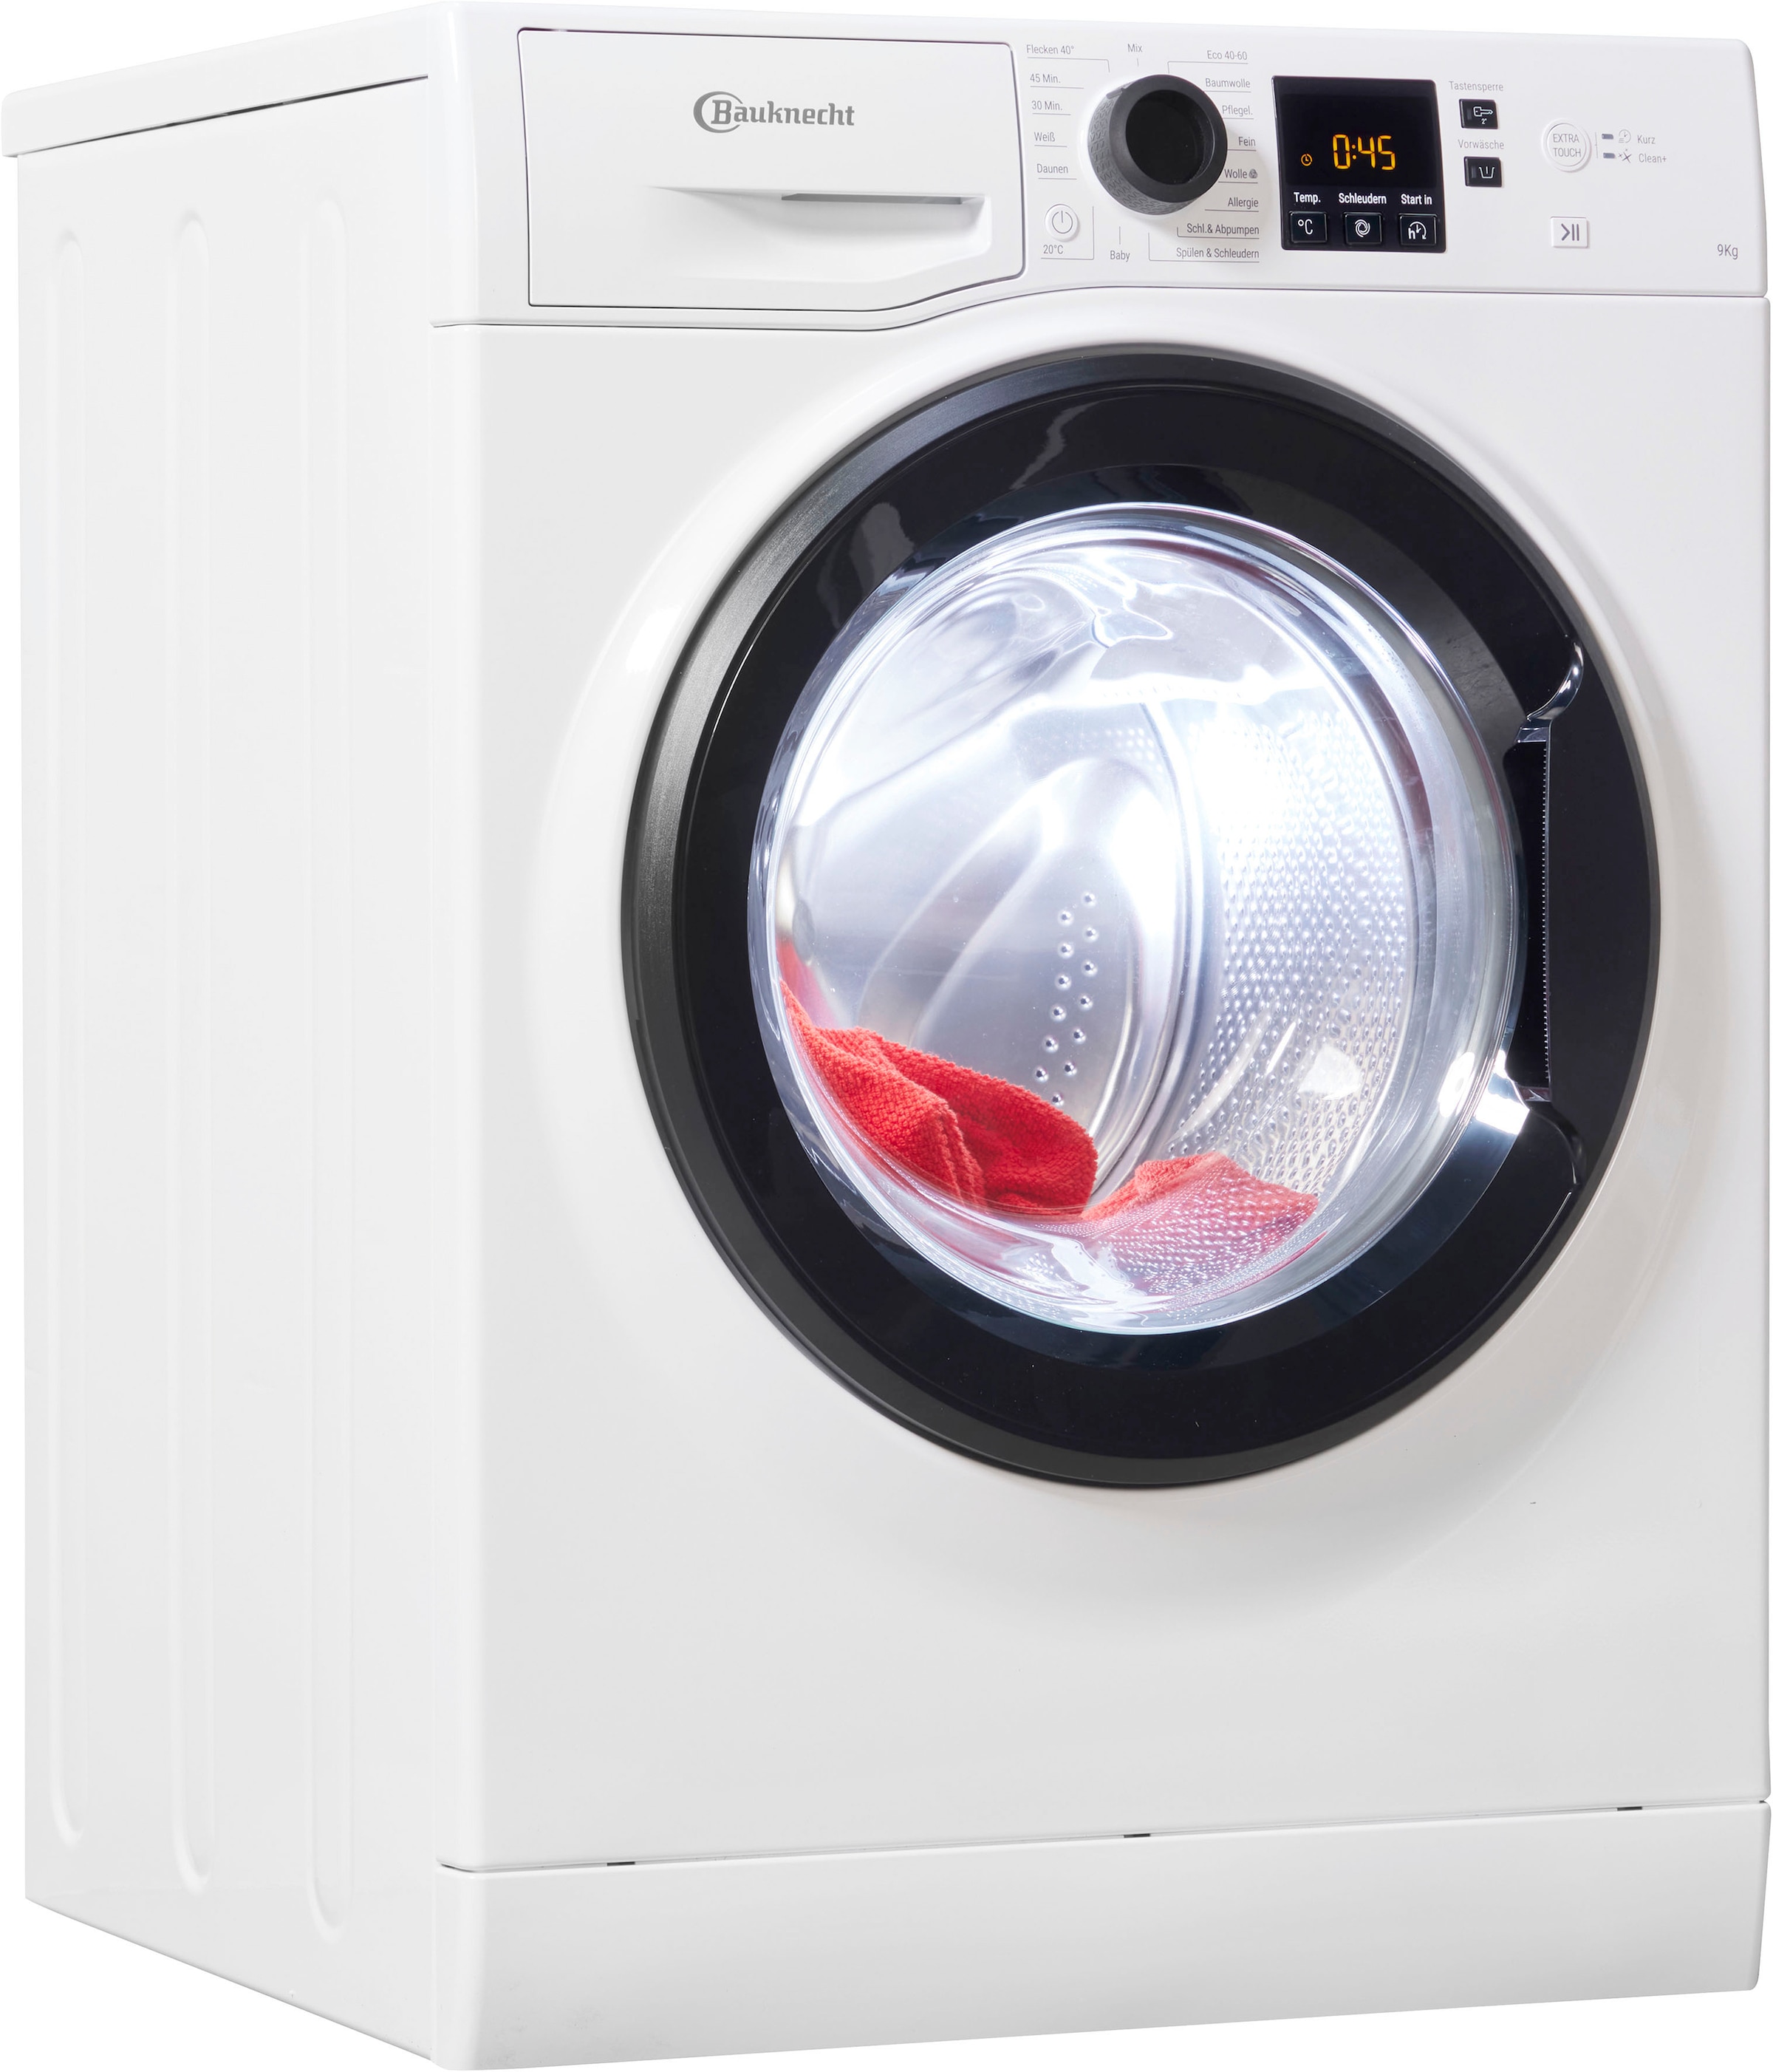 Bauknecht Waschmaschinen jetzt auf Teilzahlung Universal. hat bestellen sein Jeder ▻